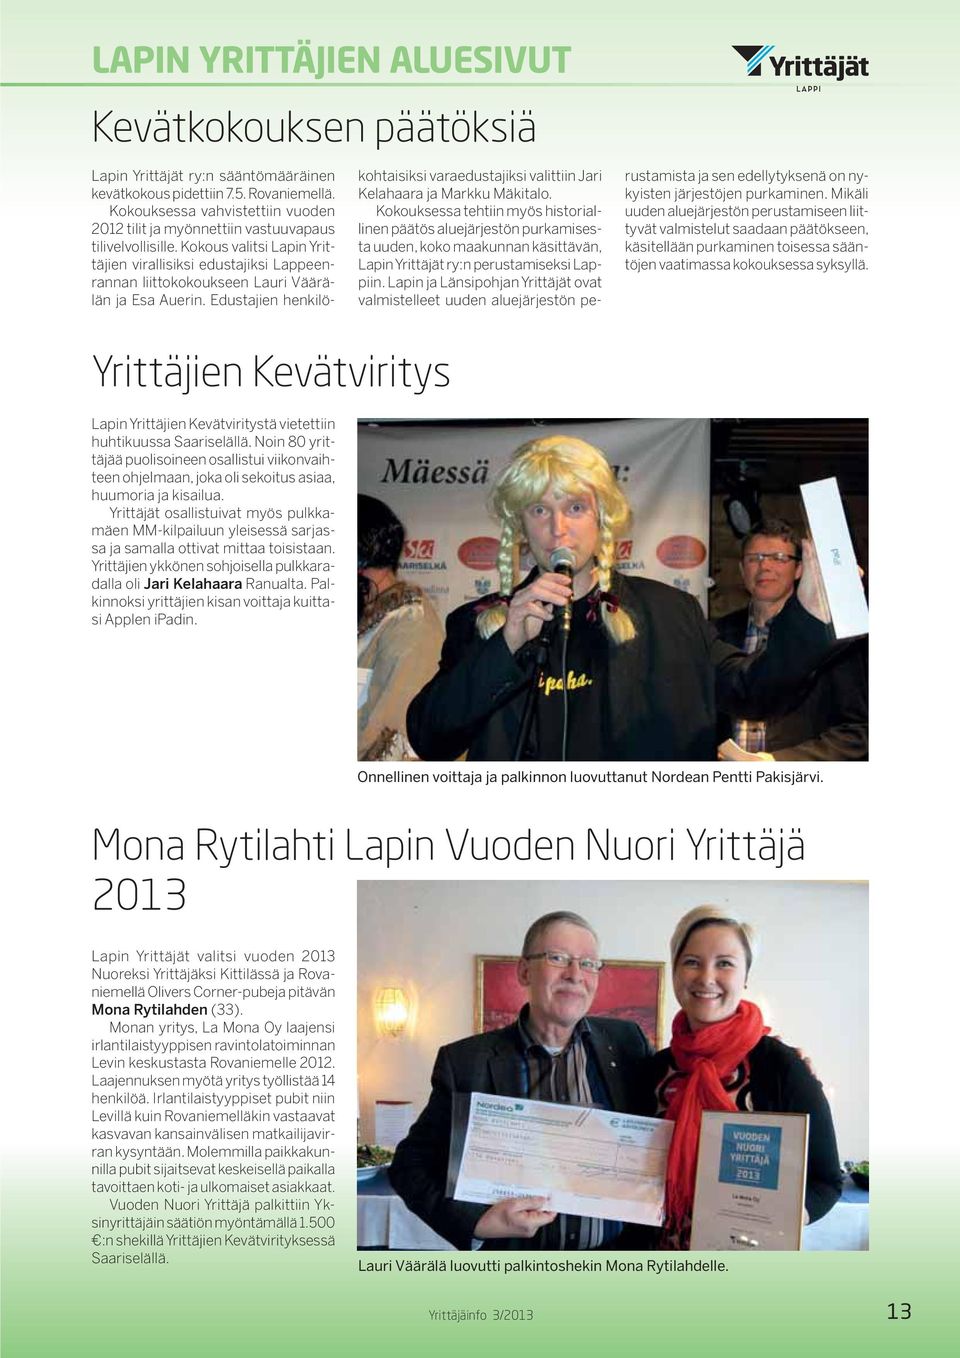 Kokous valitsi Lapin Yrittäjien virallisiksi edustajiksi Lappeenrannan liittokokoukseen Lauri Väärälän ja Esa Auerin.